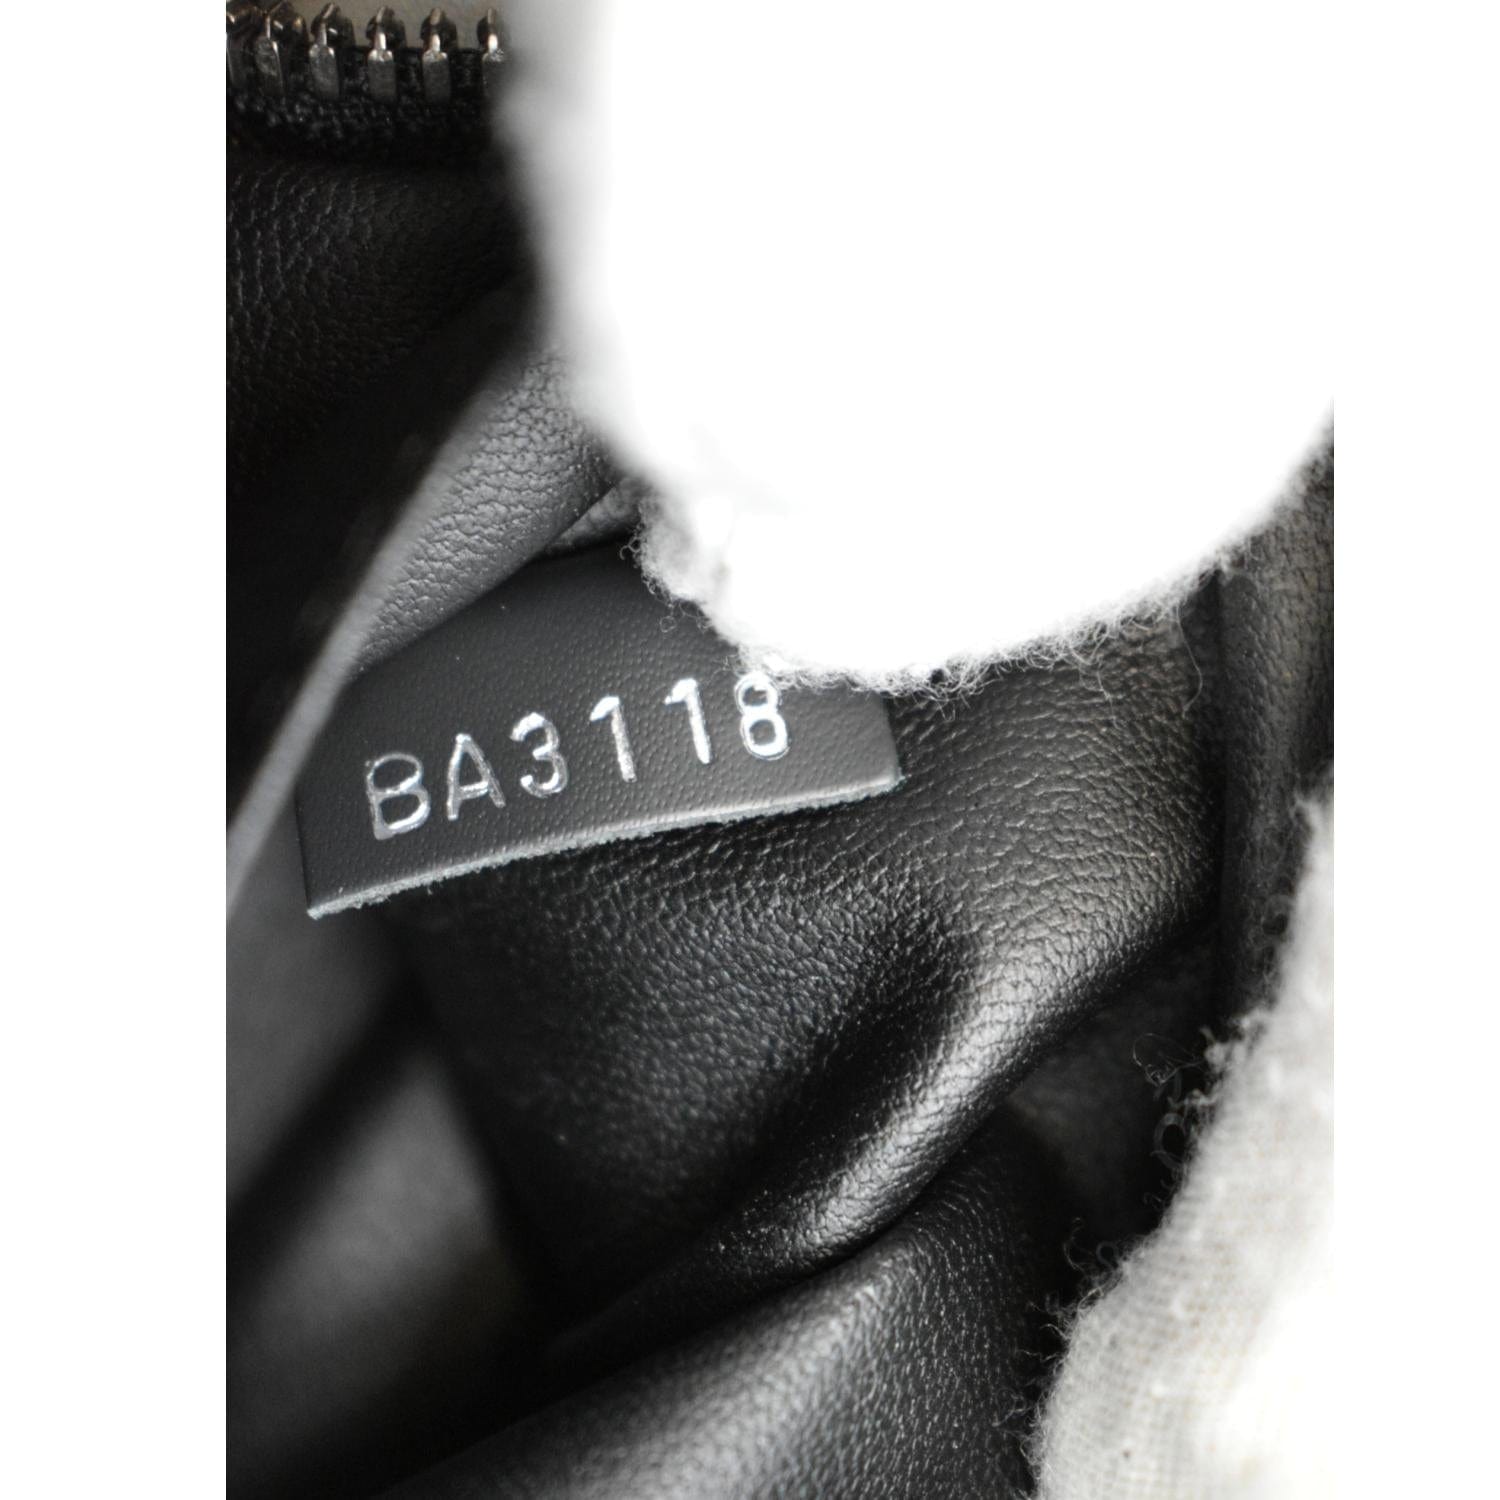 Louis Vuitton 2018 Eclipse Wash Bag - Black for Women